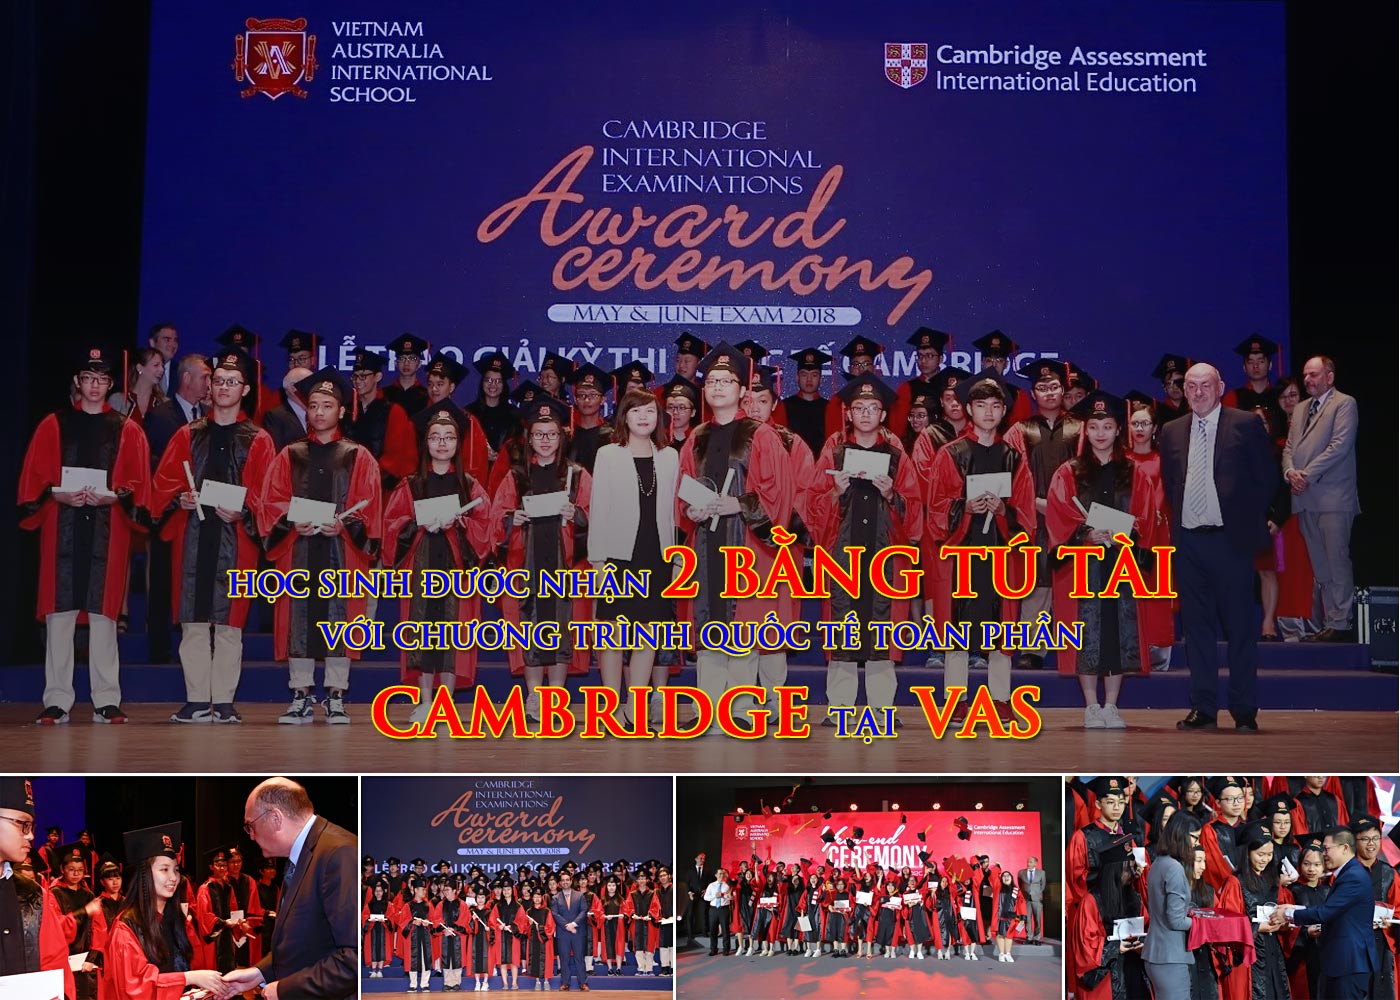 Học sinh được nhận 2 bằng tú tài với chương trình quốc tế toàn phần Cambridge tại VAS - Ảnh 1